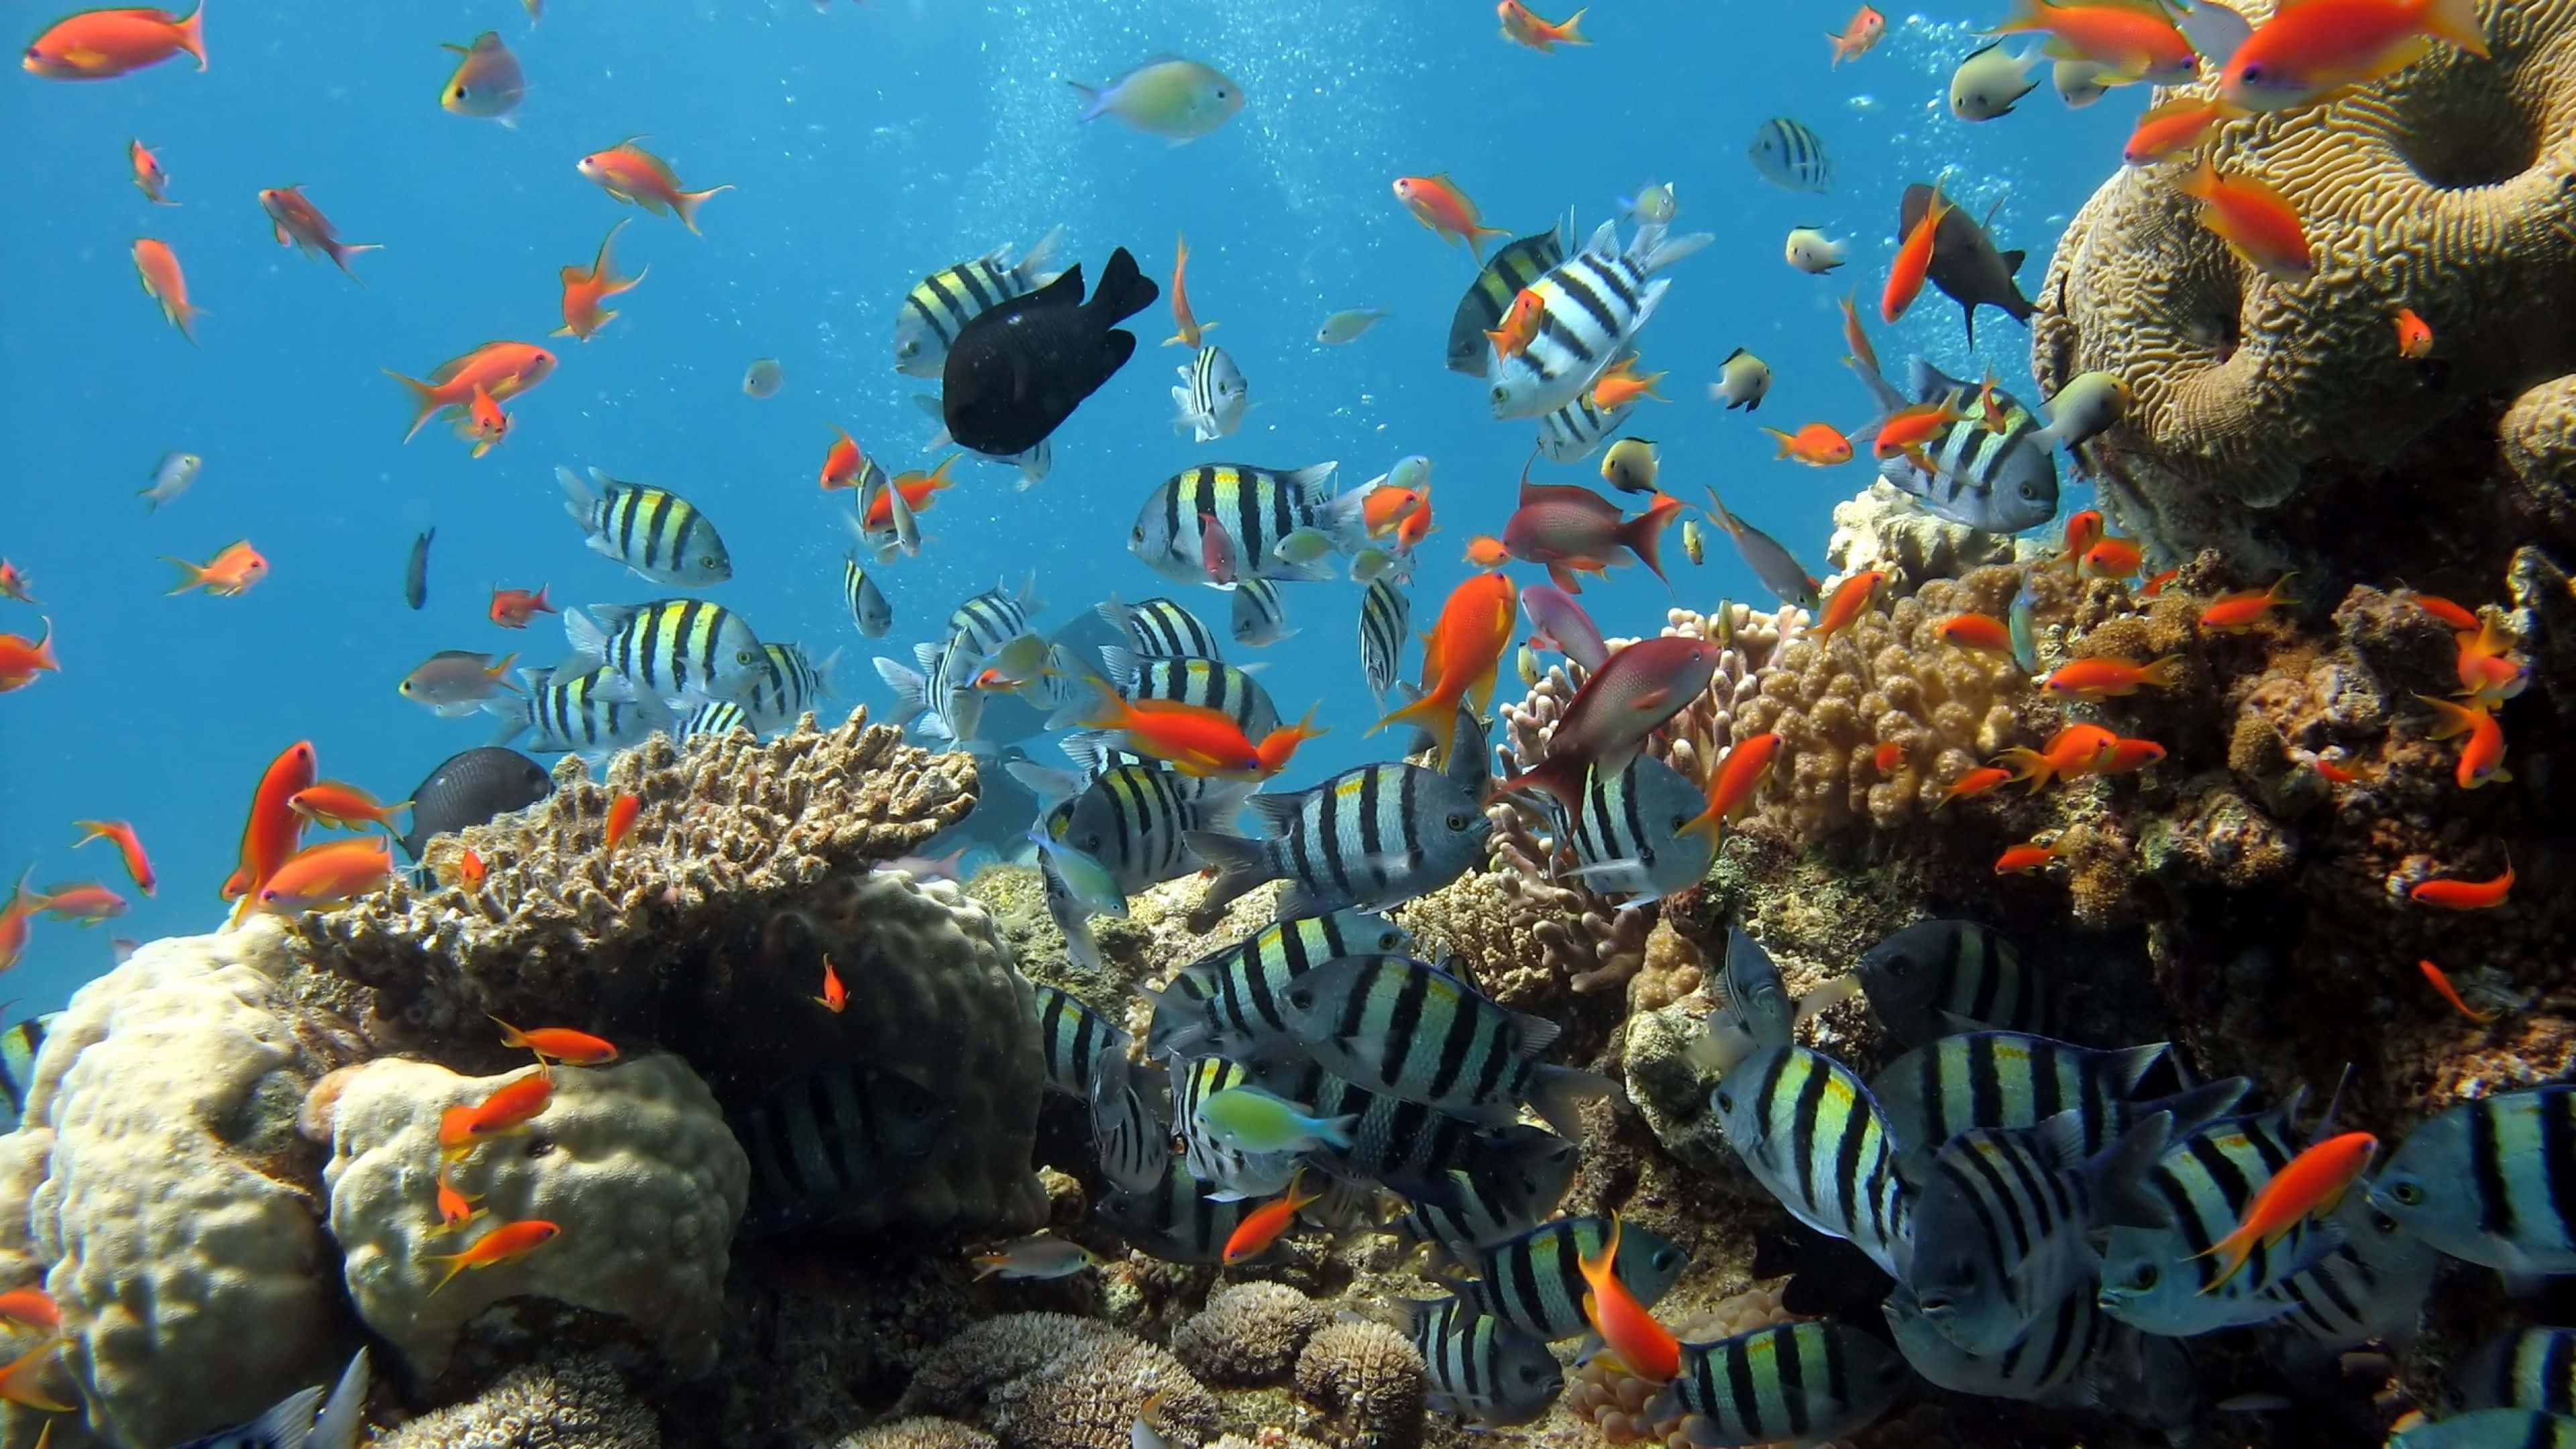 Exquisite 4k Underwater Marine Life Wallpaper